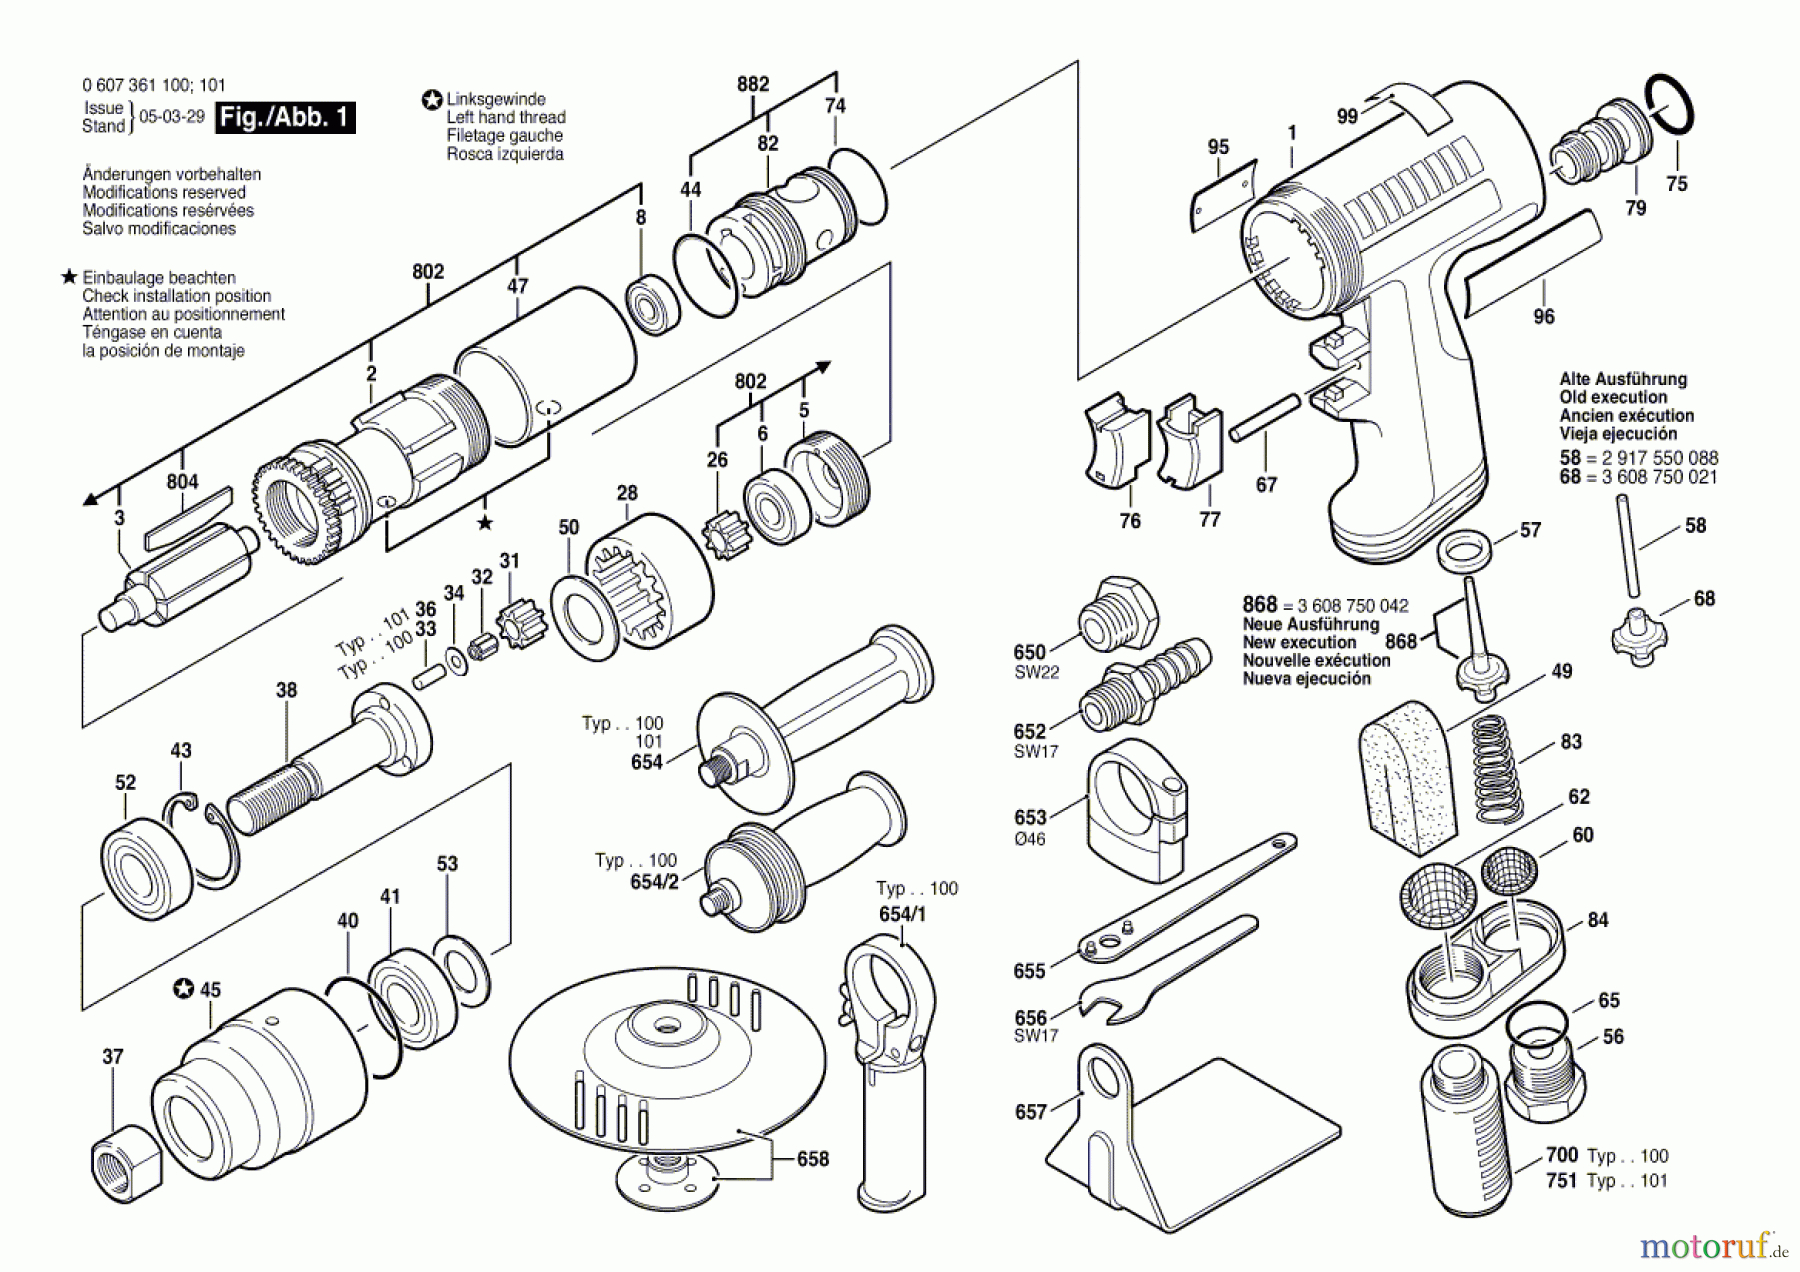  Bosch Werkzeug Pw-Vertikalschleifer 400 WATT-SERIE Seite 1